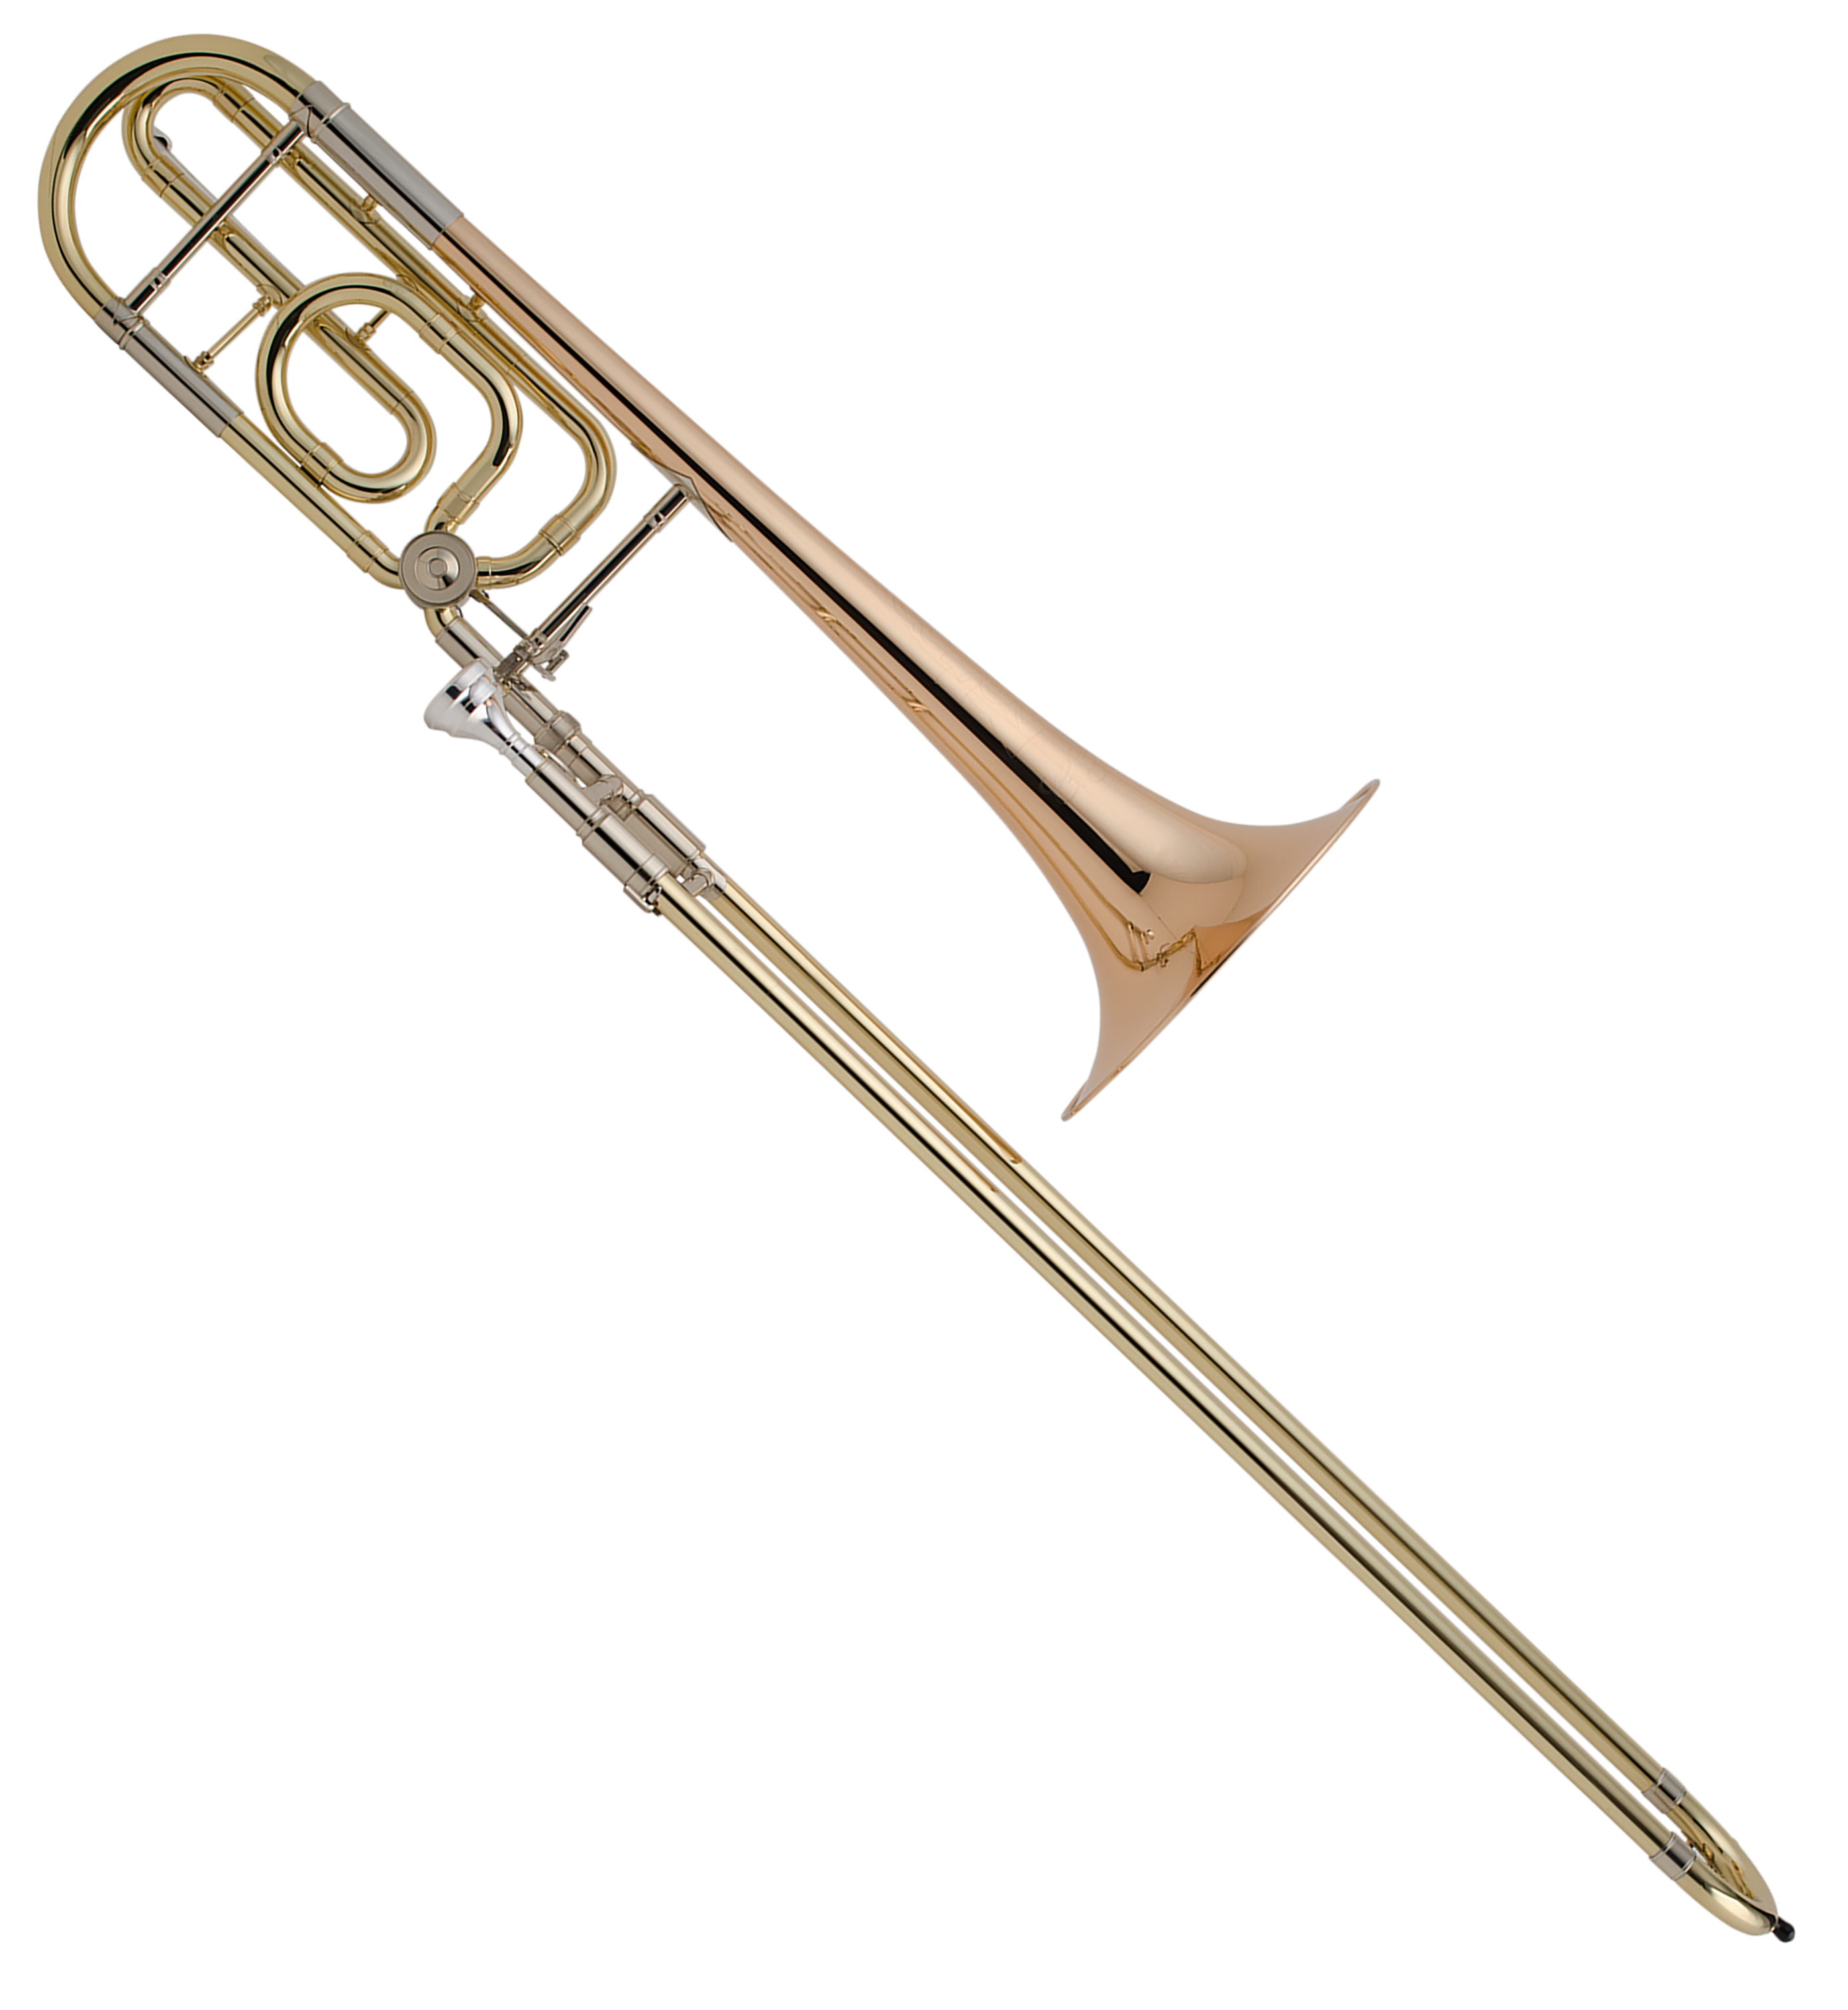 C.G. Conn 52H .525"/.547" dual bore Intermediate Tenor Trombone w/ F attachment